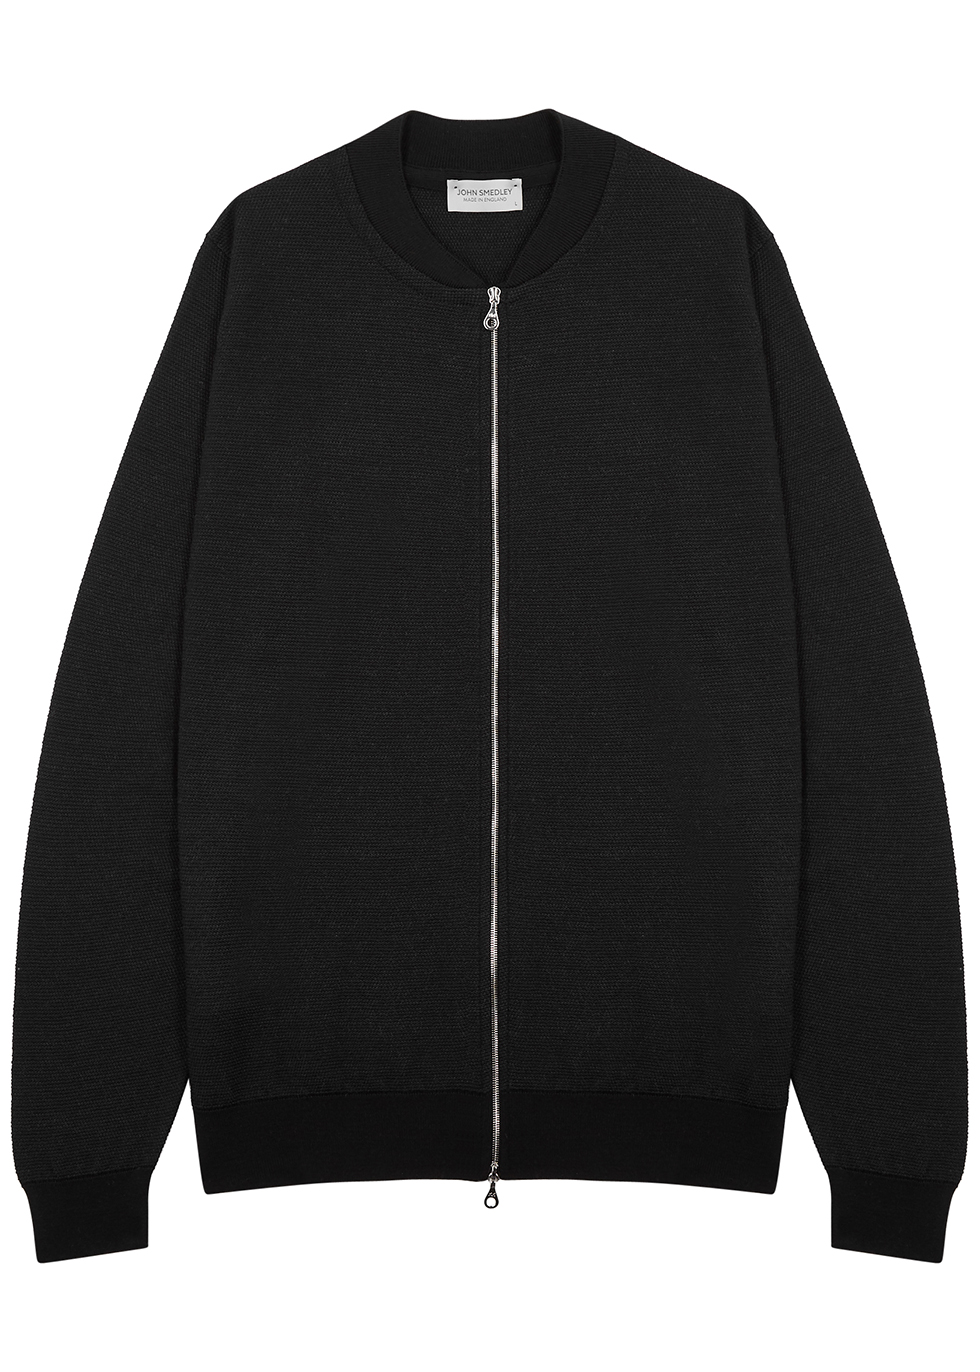 16.Singular black wool bomber jacket